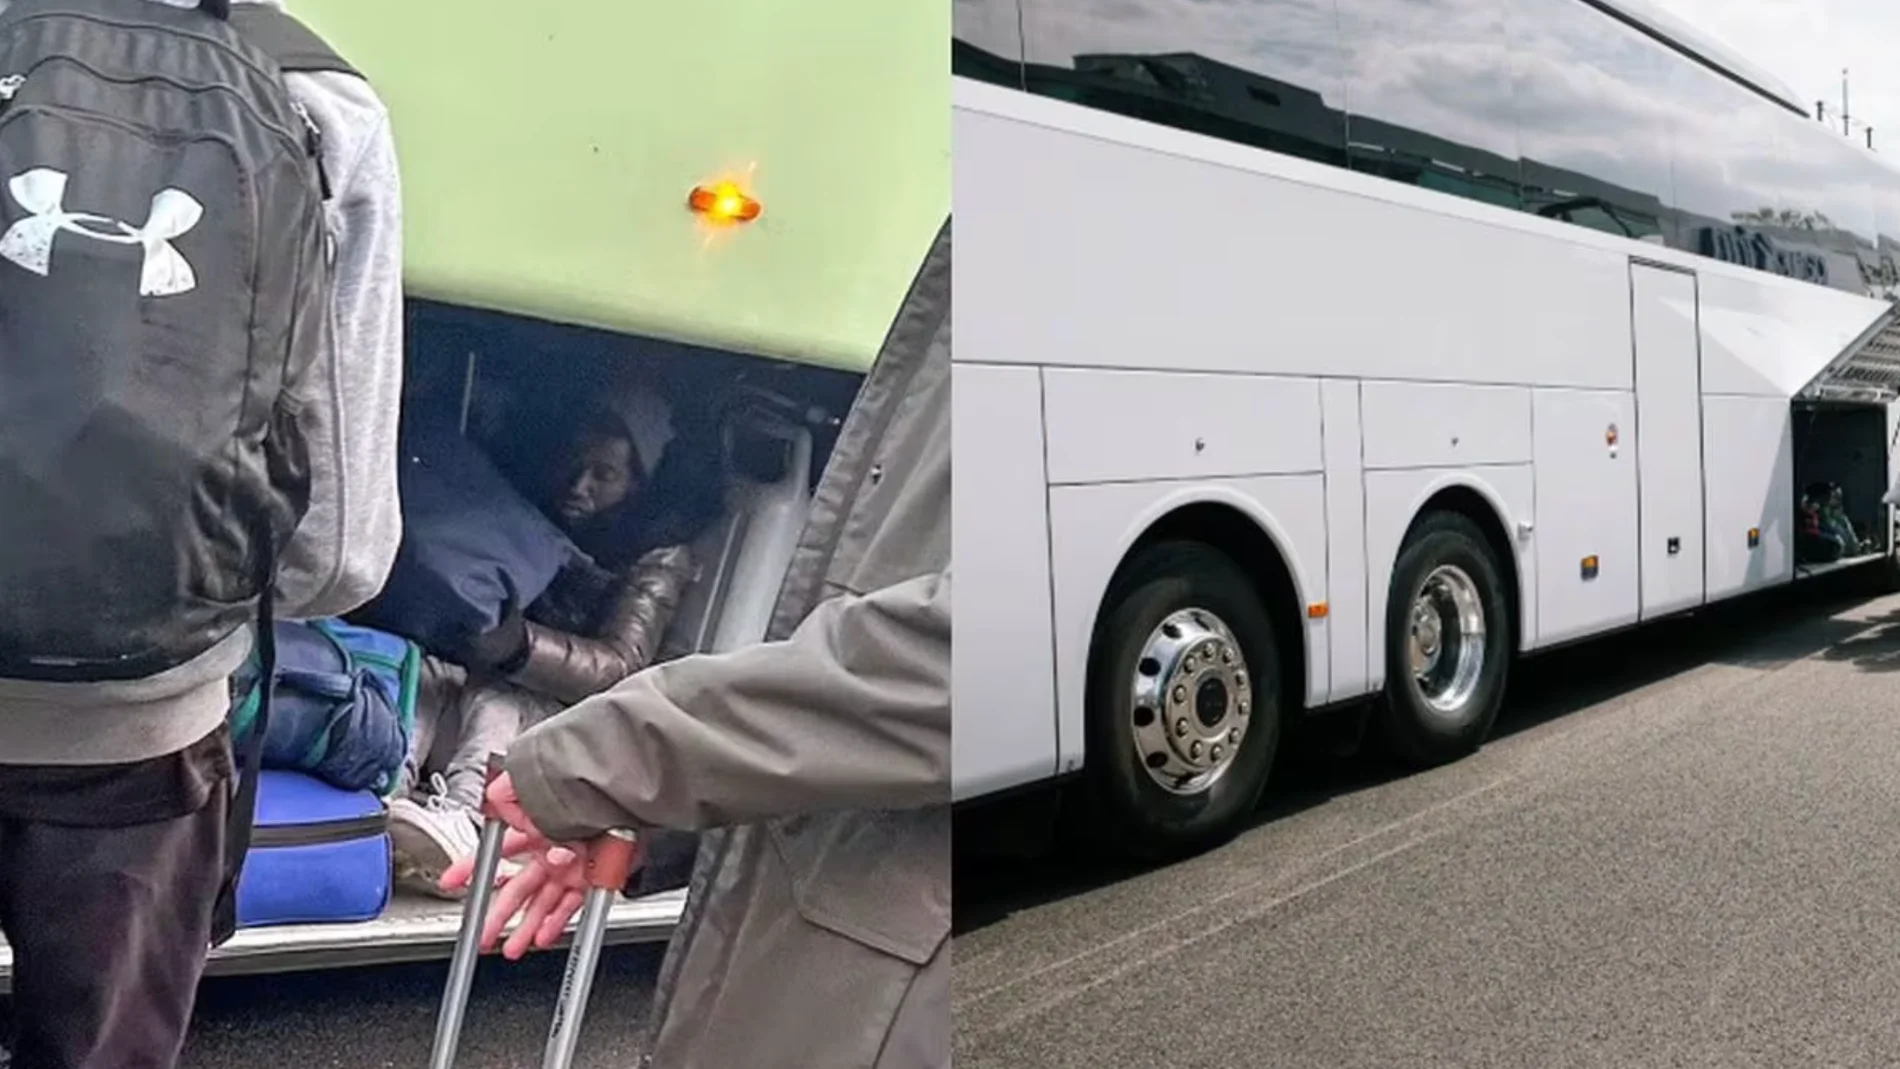 Los dos inmigrantes encontrados dentro del maletero del autocar escolar en la localidad de Totton, cerca de Southampton